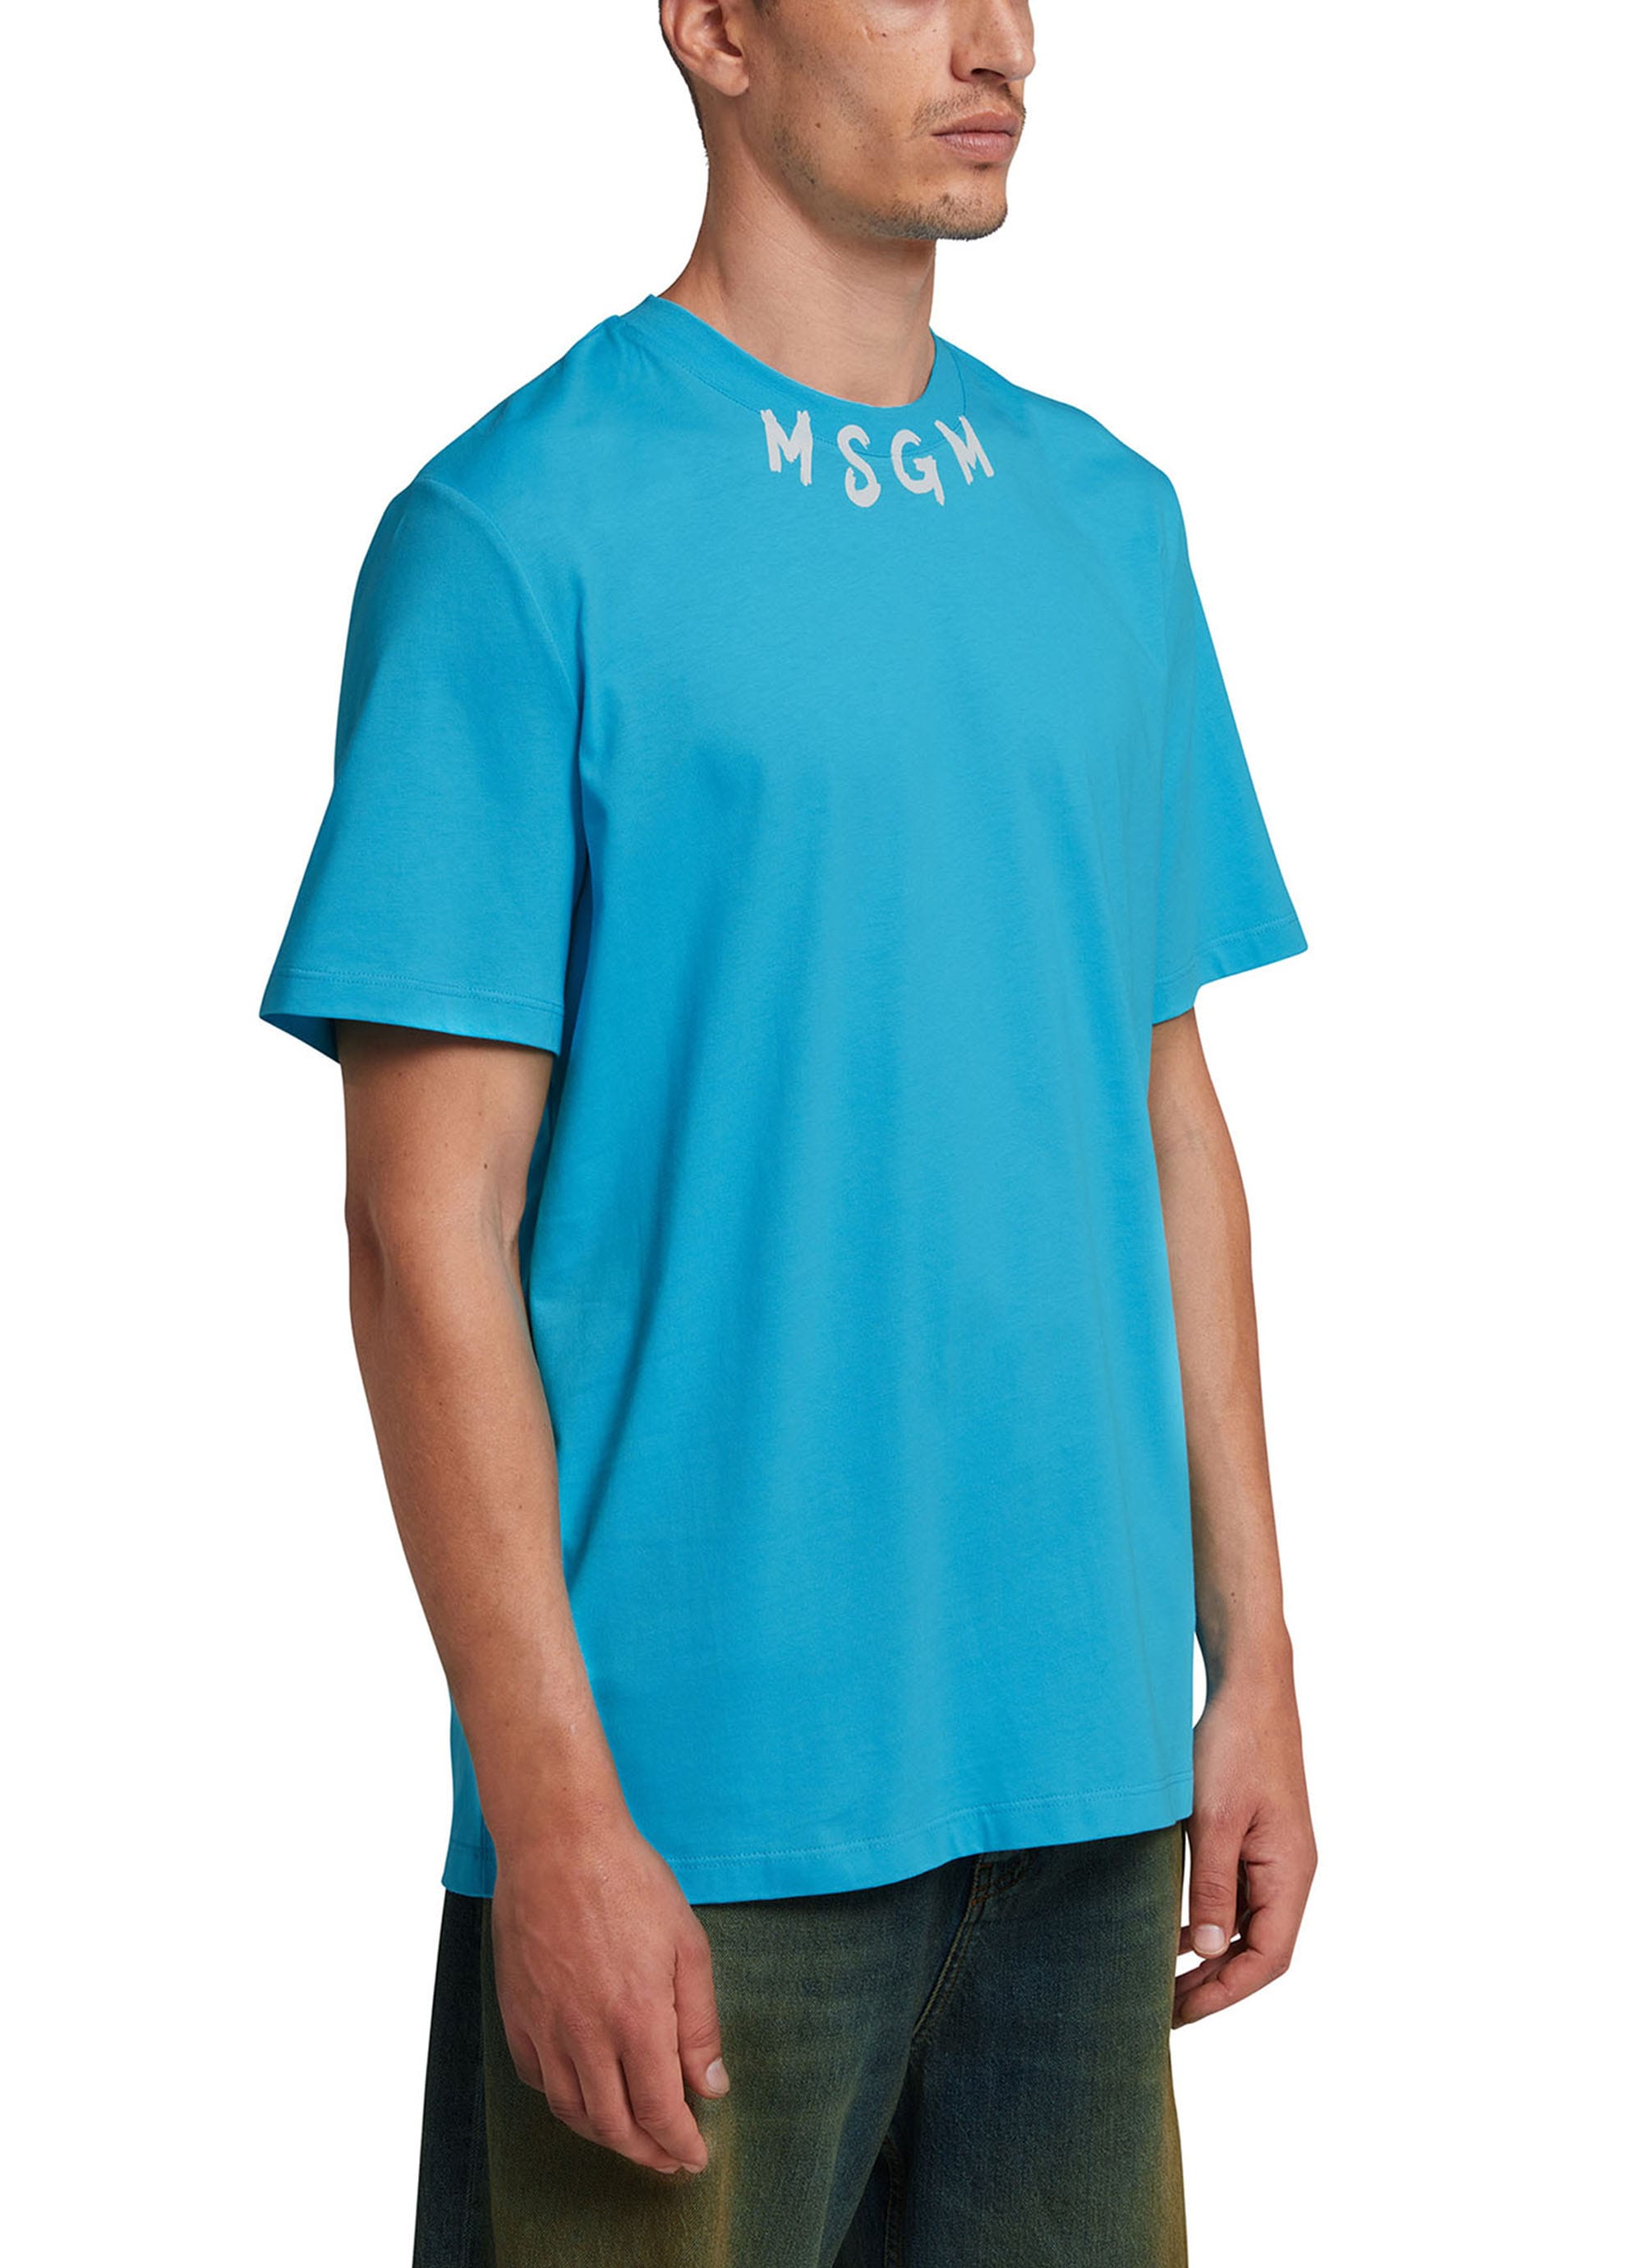 MSGM NEWブラッシュストロークロゴTシャツ 詳細画像 ライトブルー 3